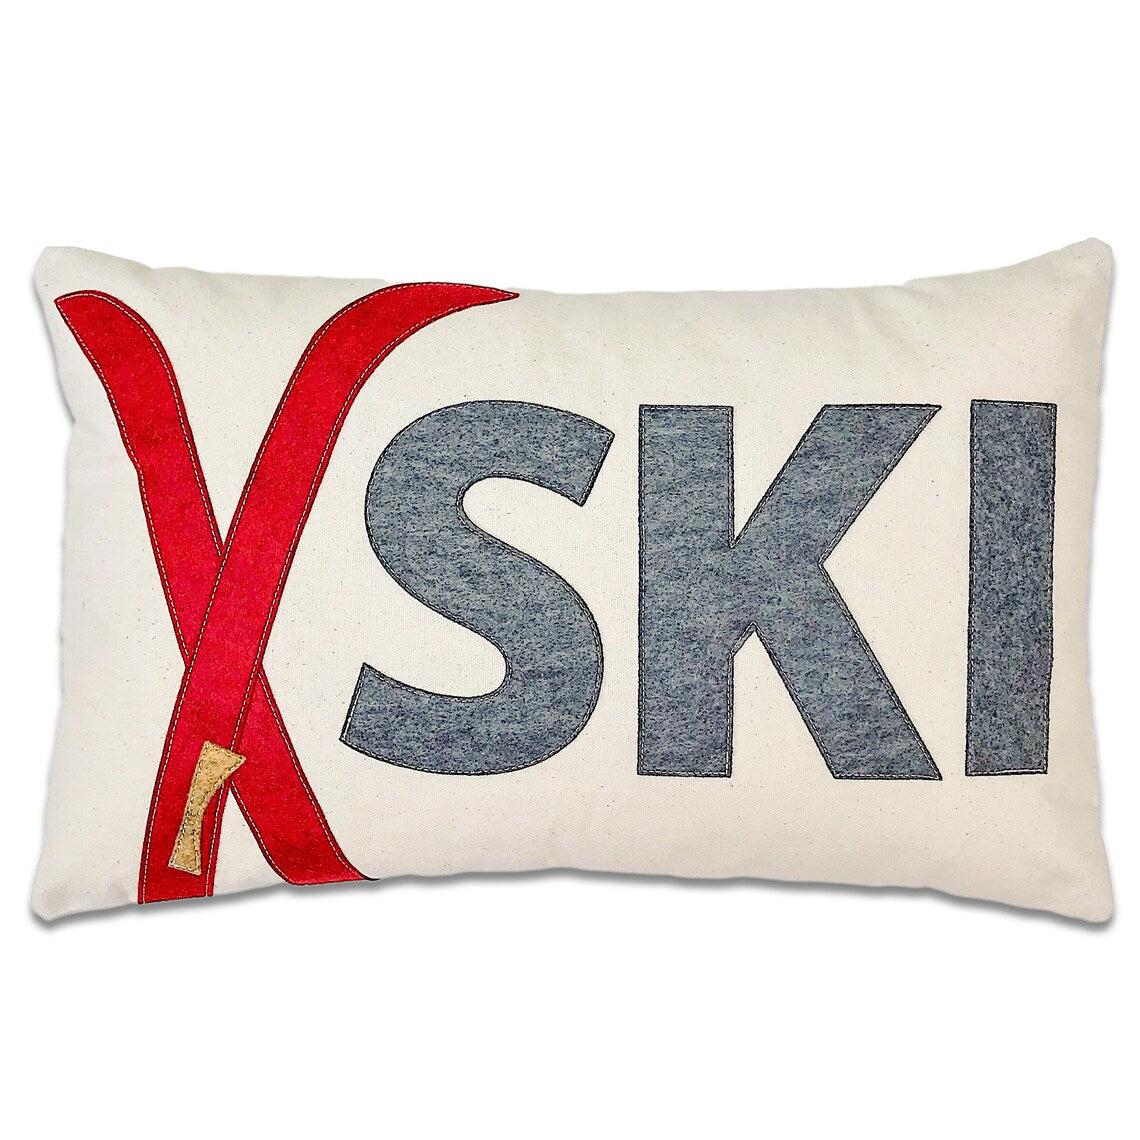 Crossed Ski's Pillow